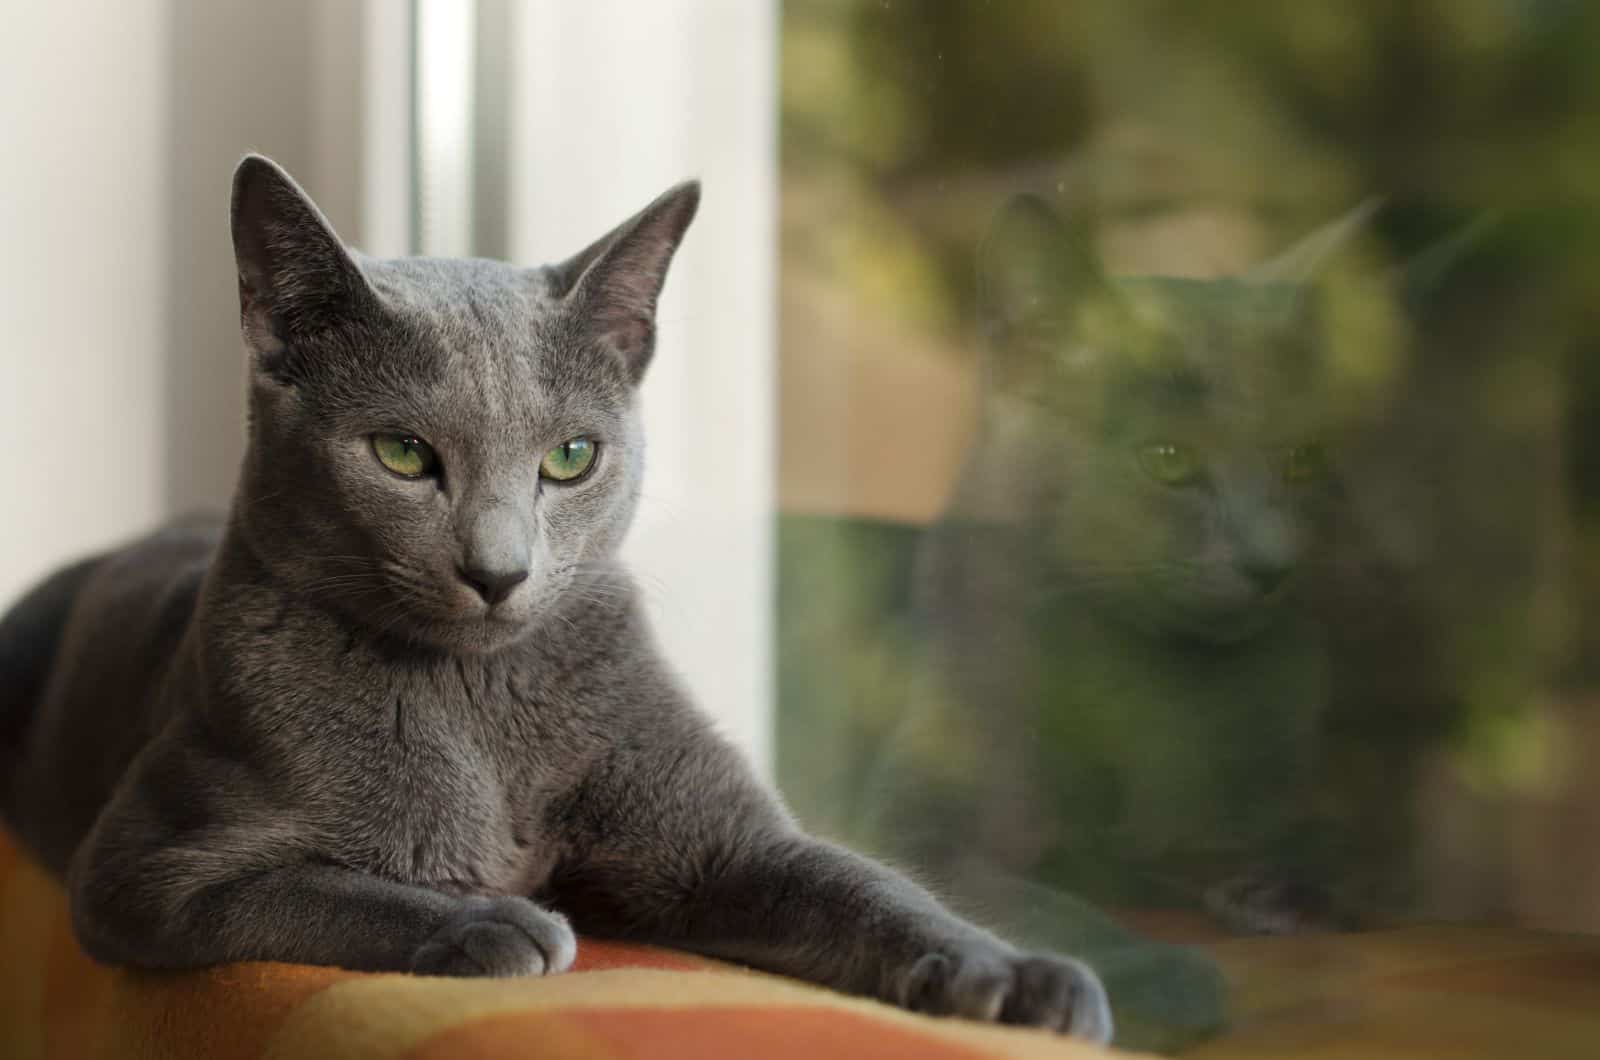 Russian Blue Cat sitting by window